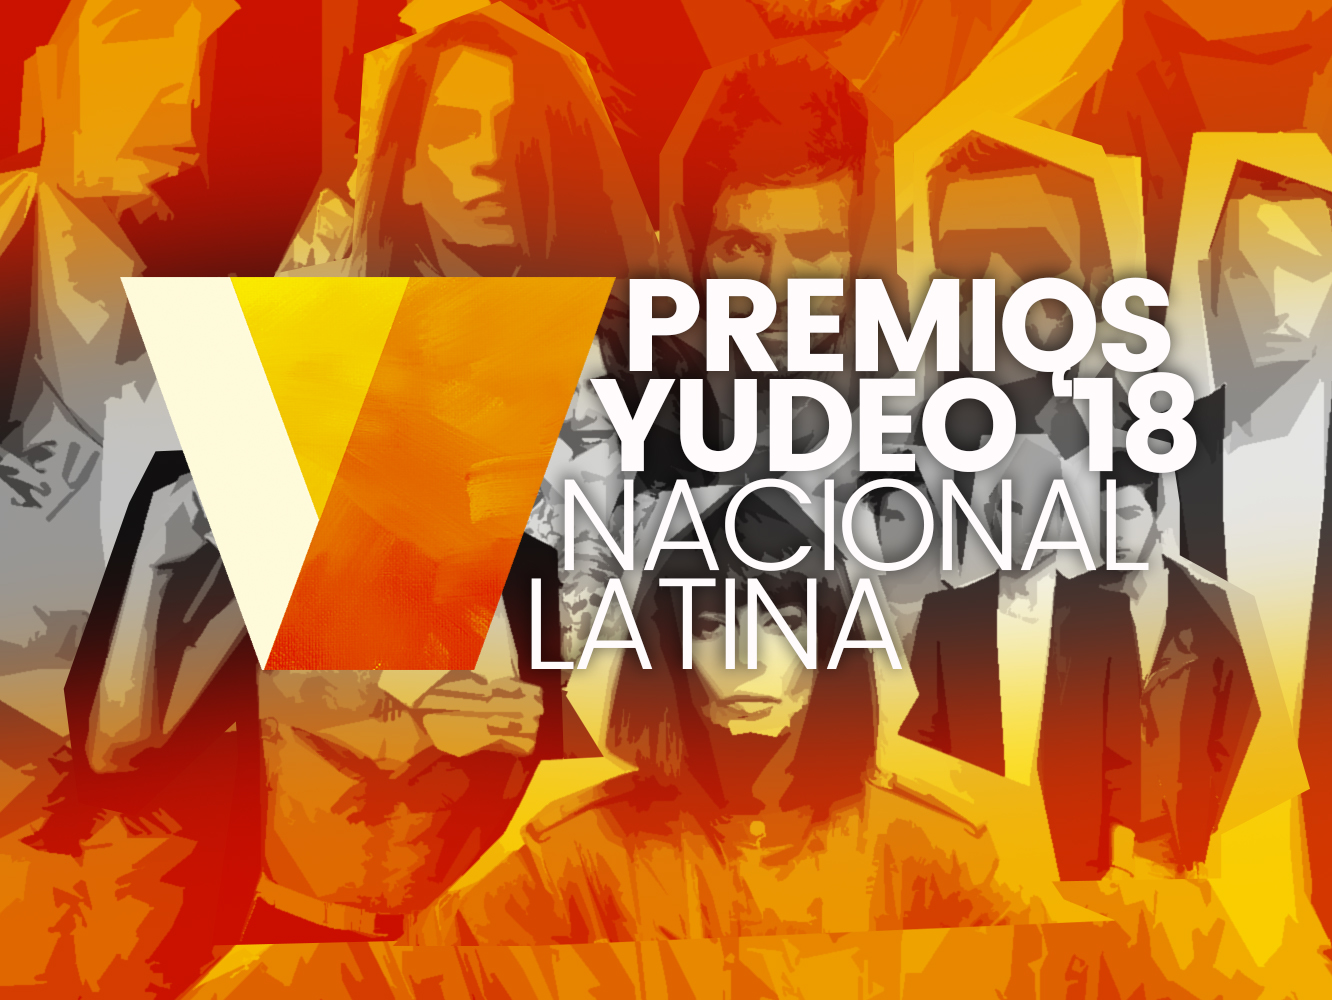  Premios Yudeo 2018 | Categoría Nacional o Latina | Tabla completa de nominados